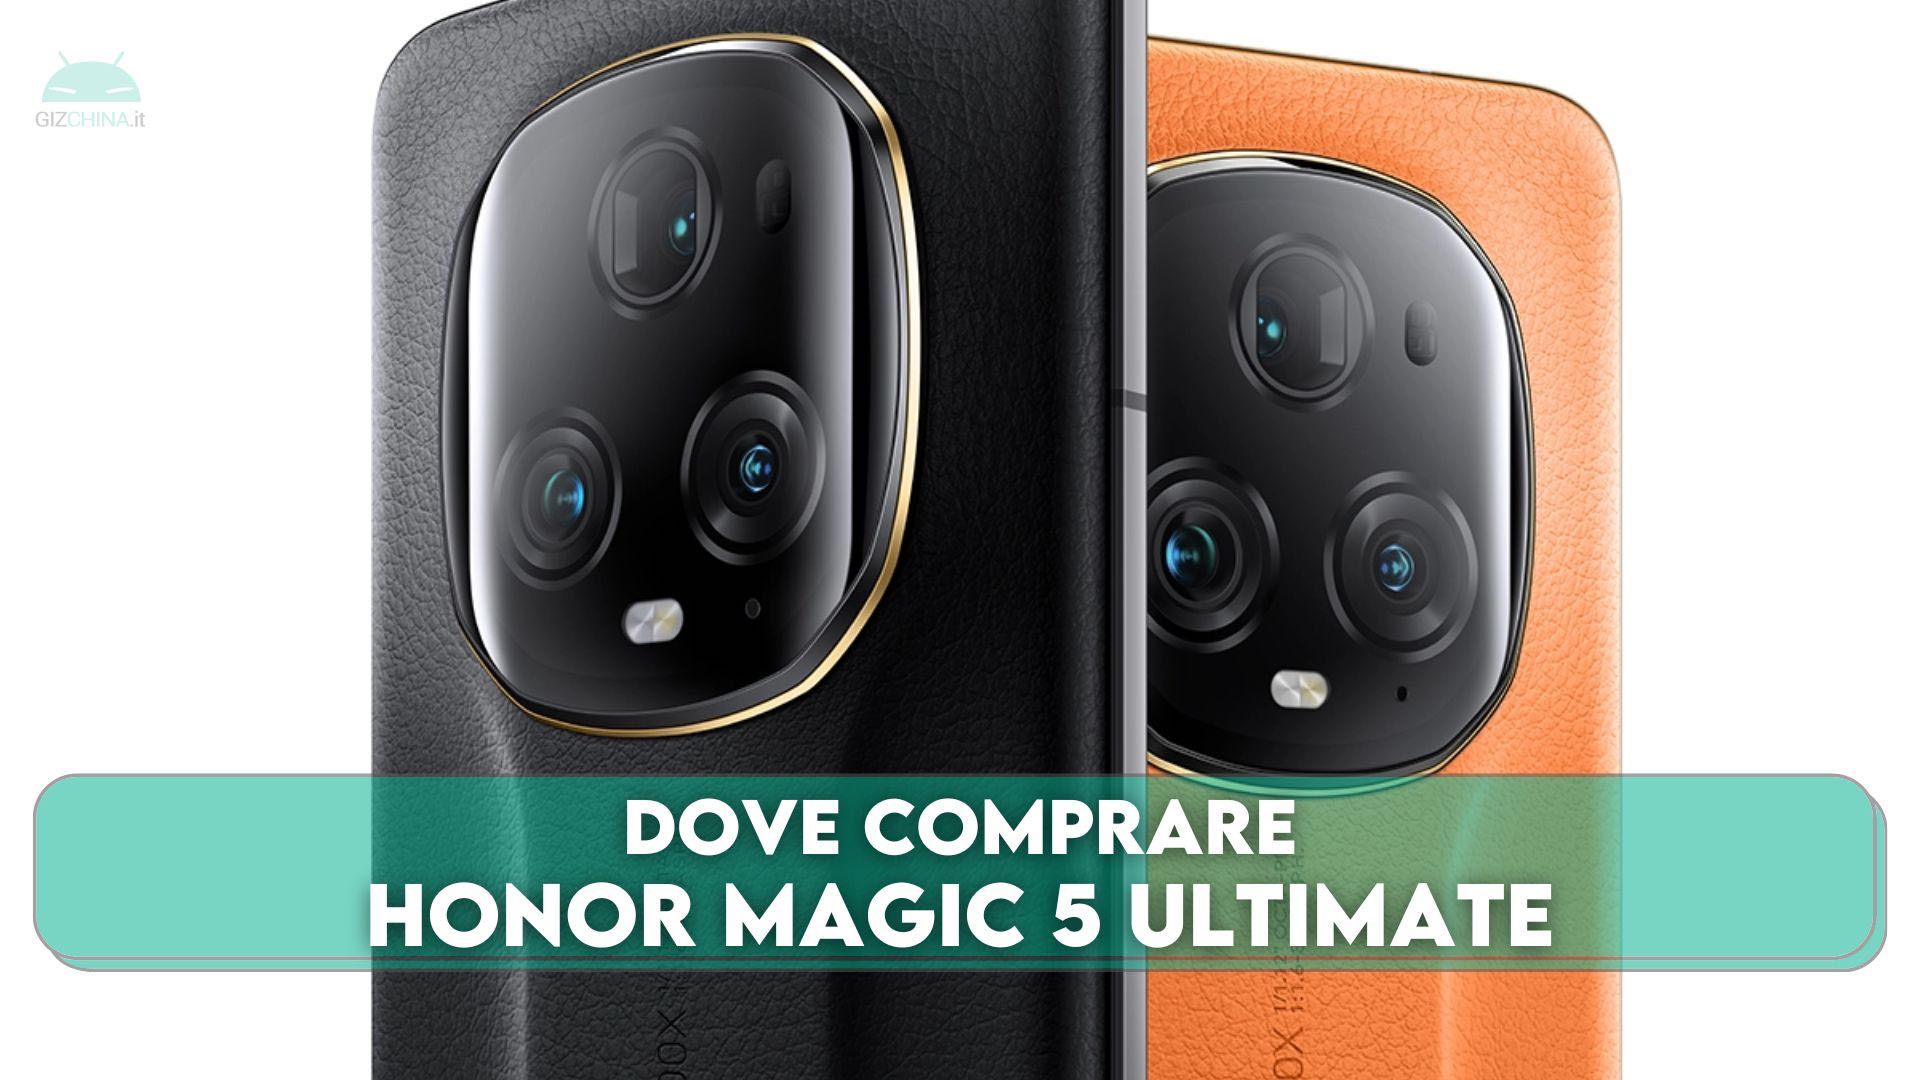 Buy Honor Magic 5 Ultimate at Giztop